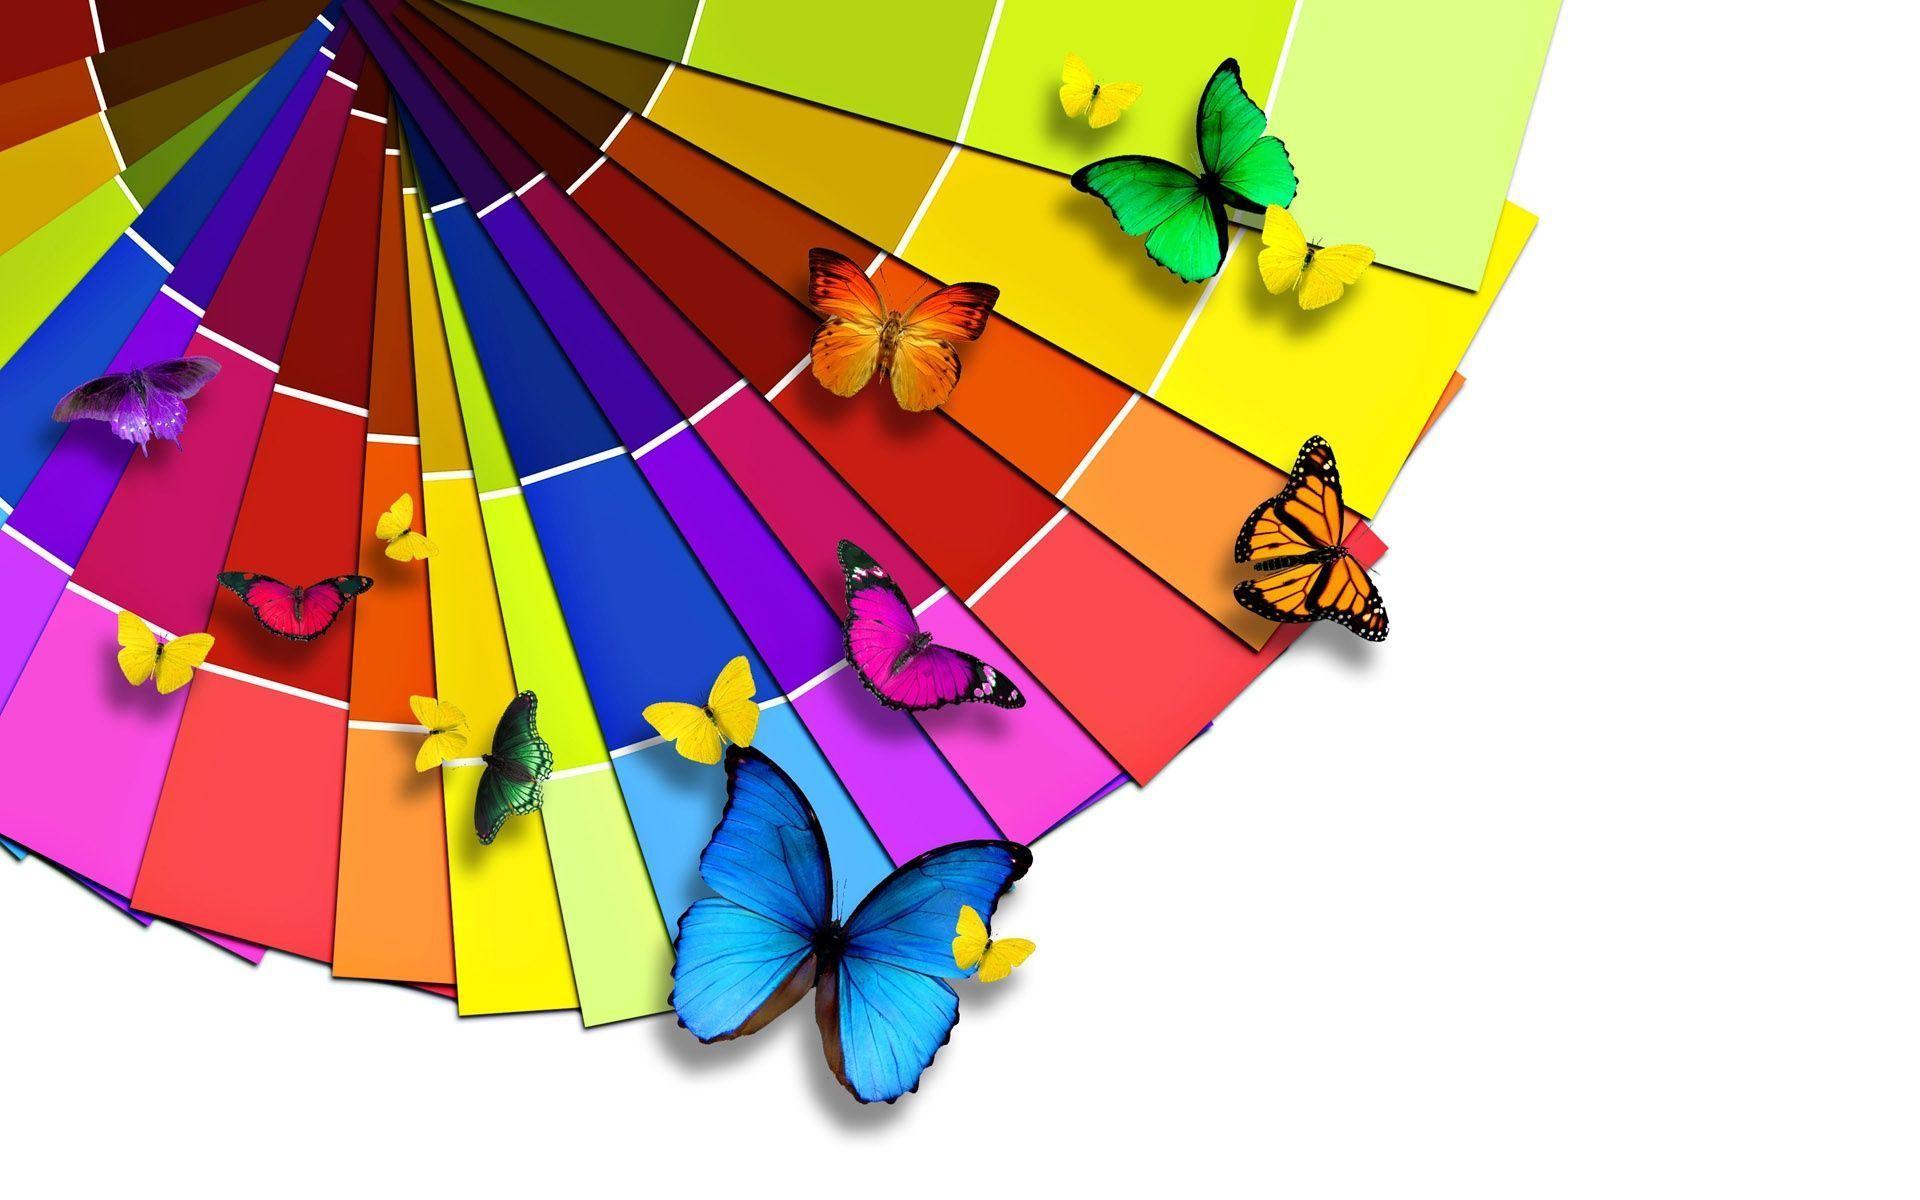 Mr HD Wallpaper. Colorful Butterflies 1920x1080 Widescreen High